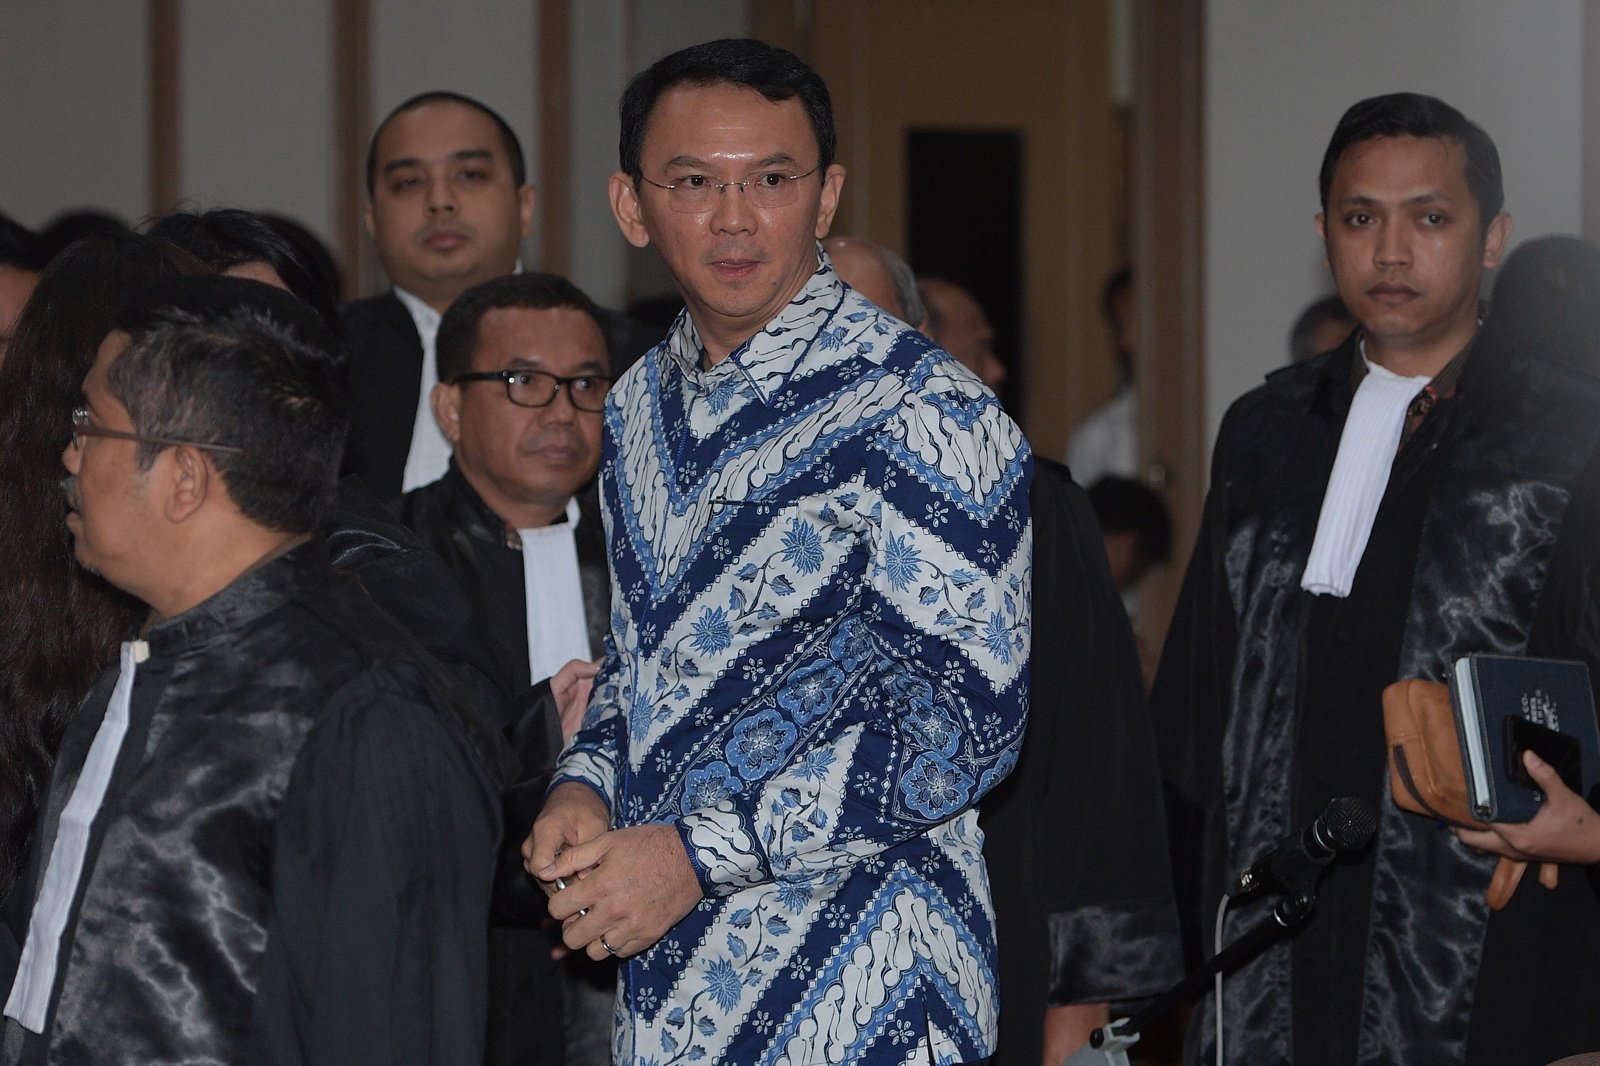 Gubernur DKI Jakarta Basuki Tjahaja Purnama (Ahok) menjalani sidang sebagai terdakwa kasus penodaan agama di Pengadilan Negeri Jakarta Utara, yang bertempat di Auditorium Kementerian Pertanian, Jakarta Selatan, Selasa (9/5).